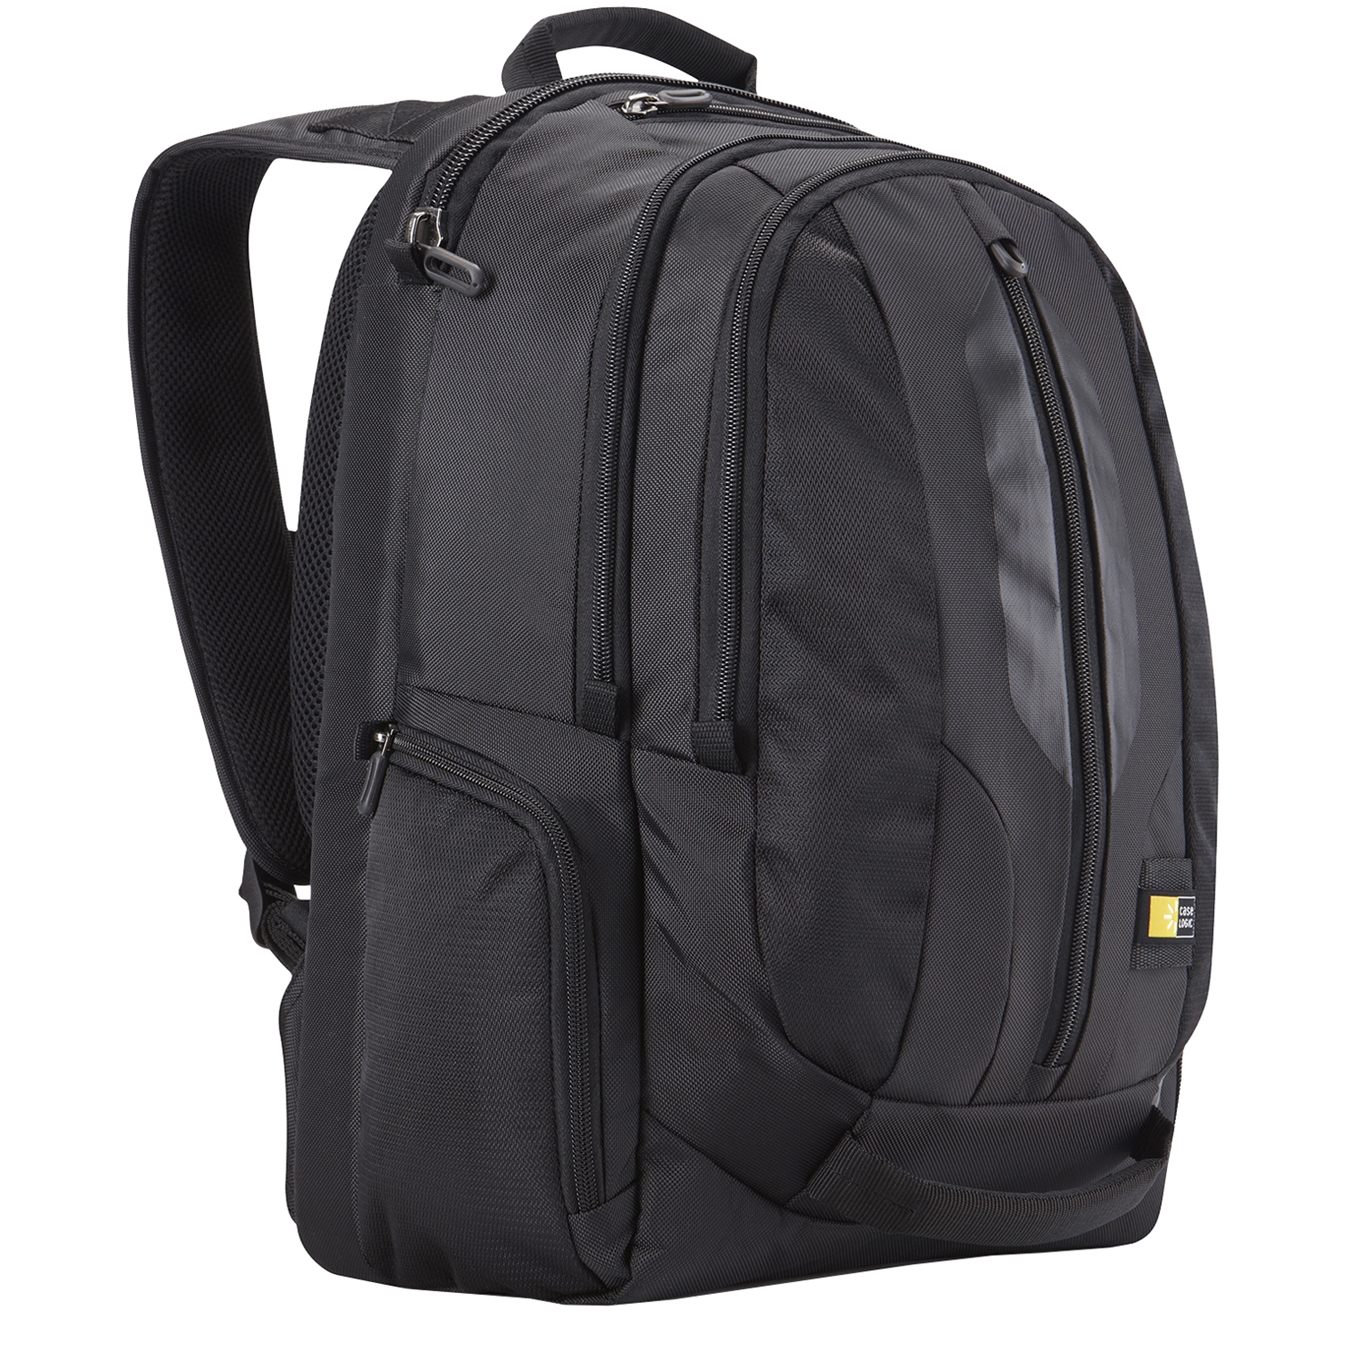 Case Logic Professional Backpack 17 inch black backpack